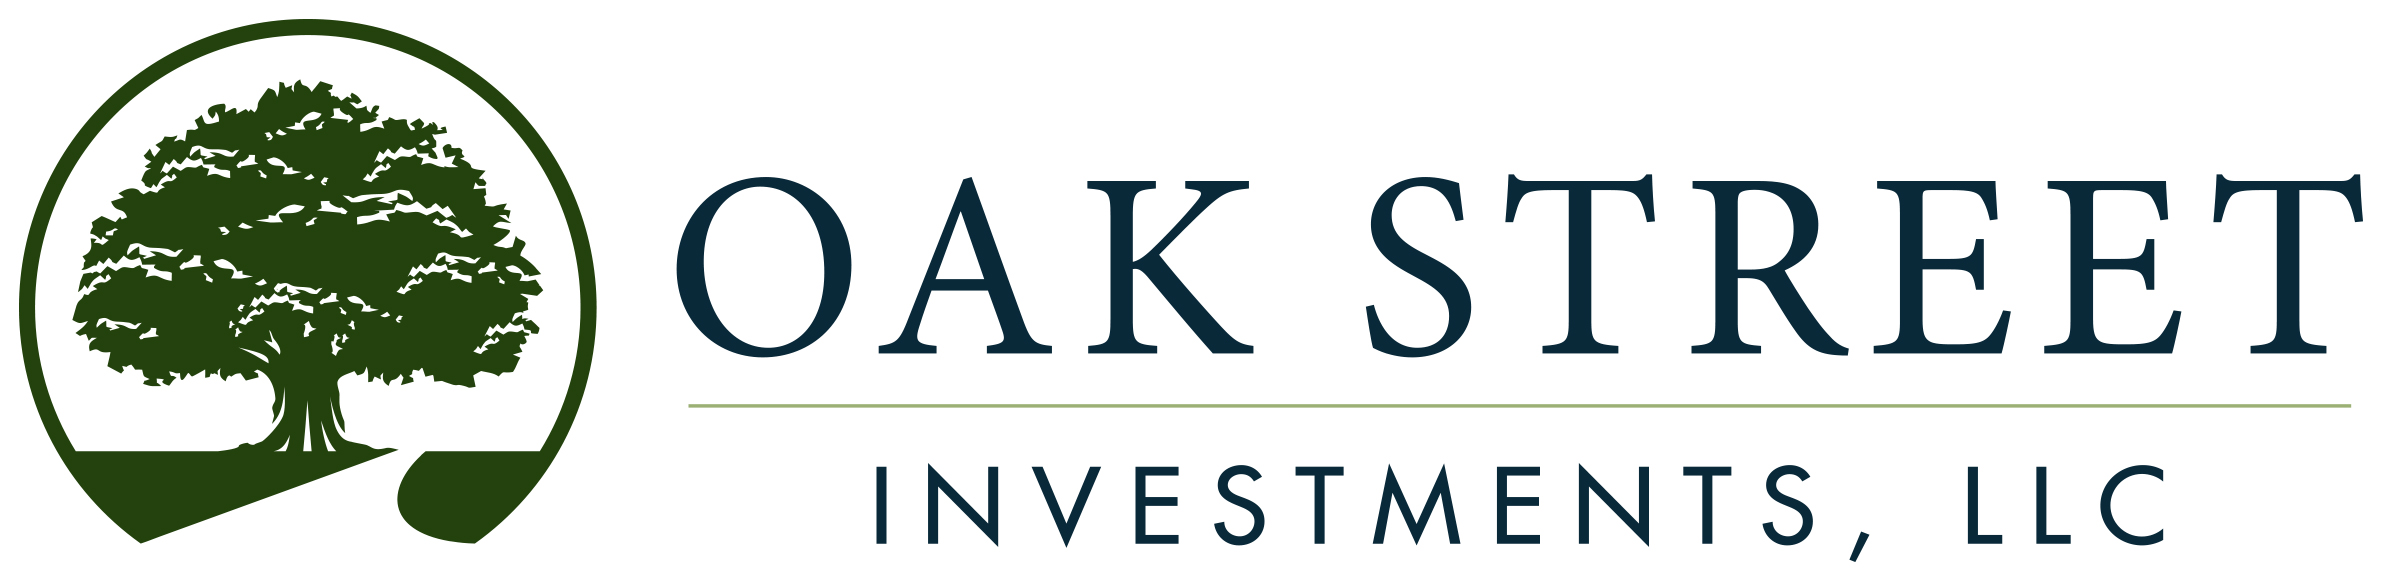 Oak Street Investments, LLC